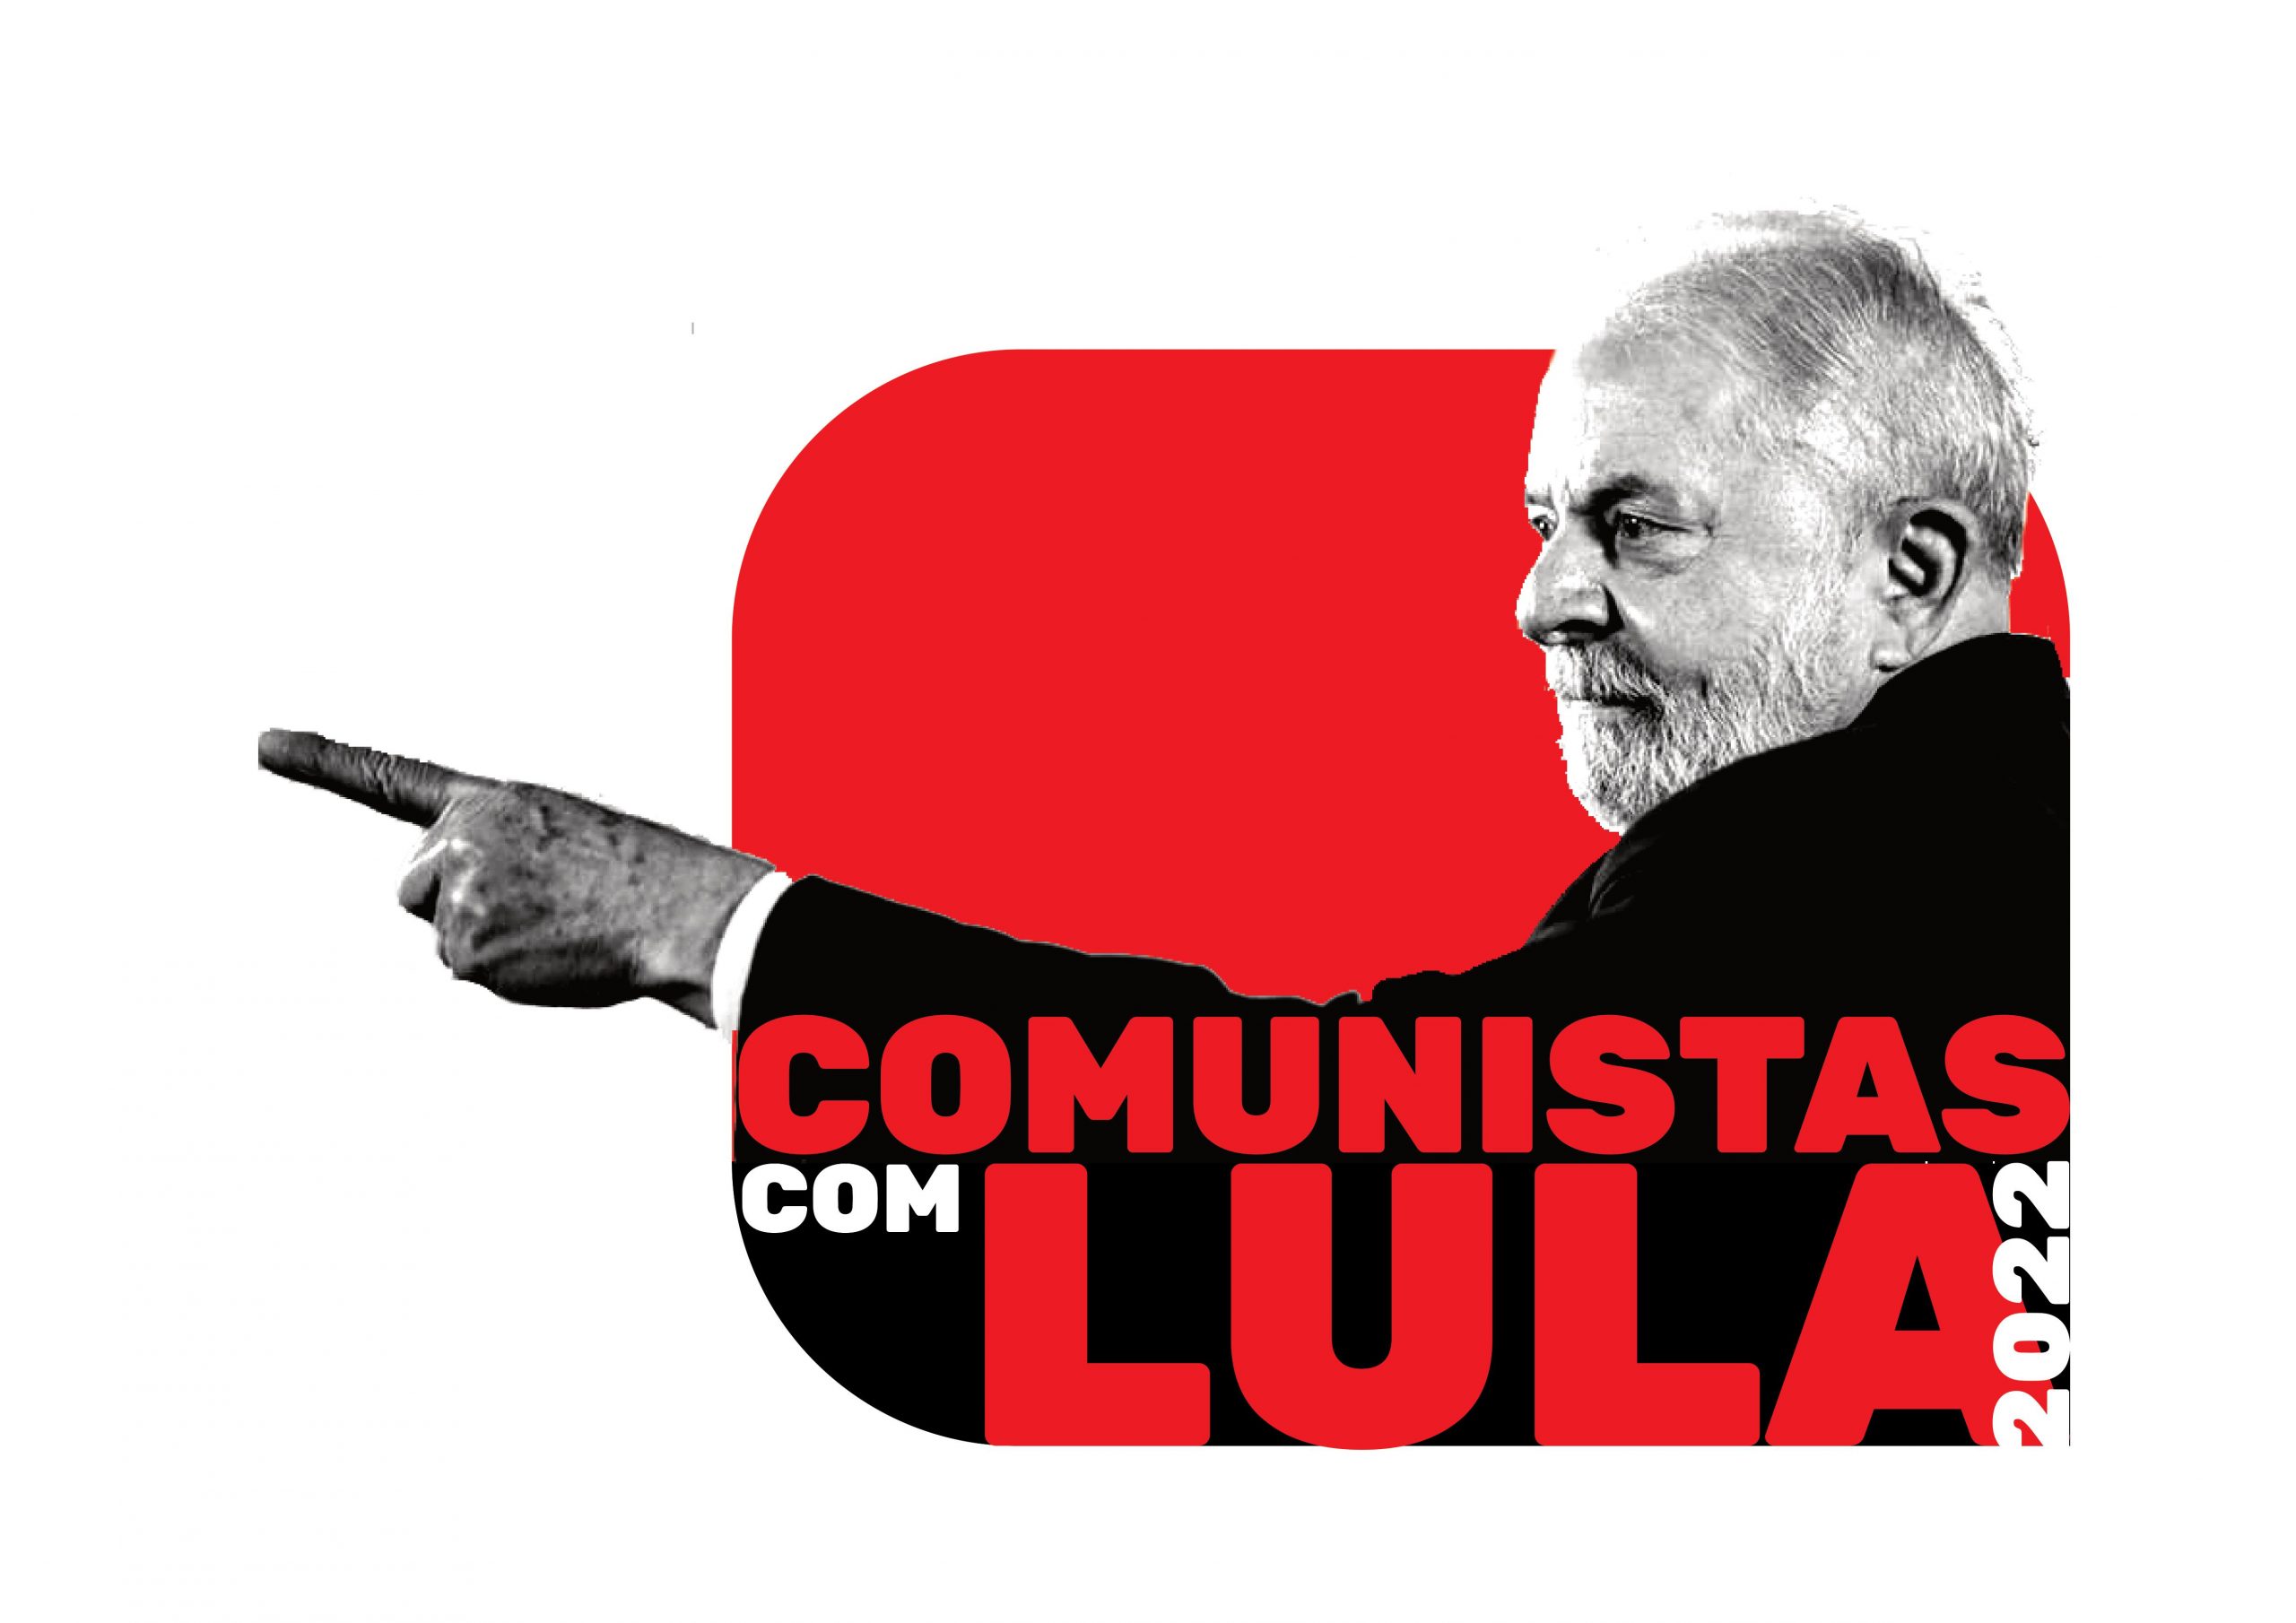 Manifesto dos Comunistas com Lula